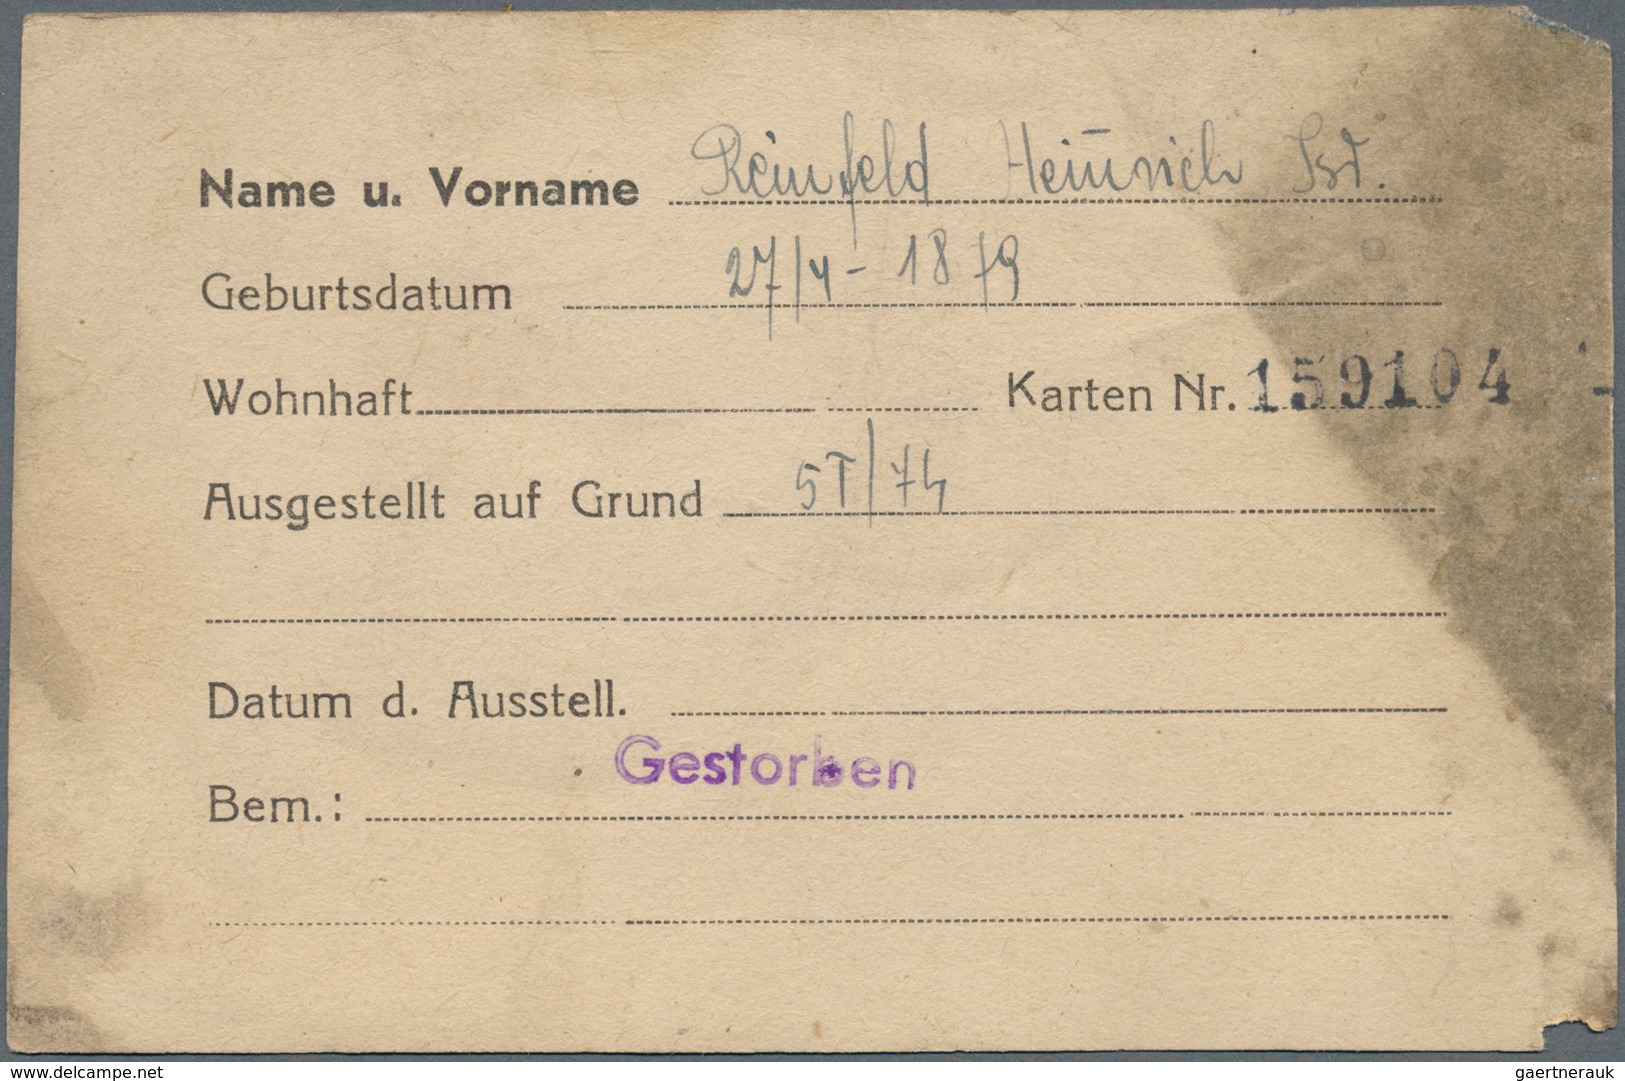 Deutschland - Konzentrations- und Kriegsgefangenenlager: Litzmannstadt Ghetto, Posten mit 13 Rations